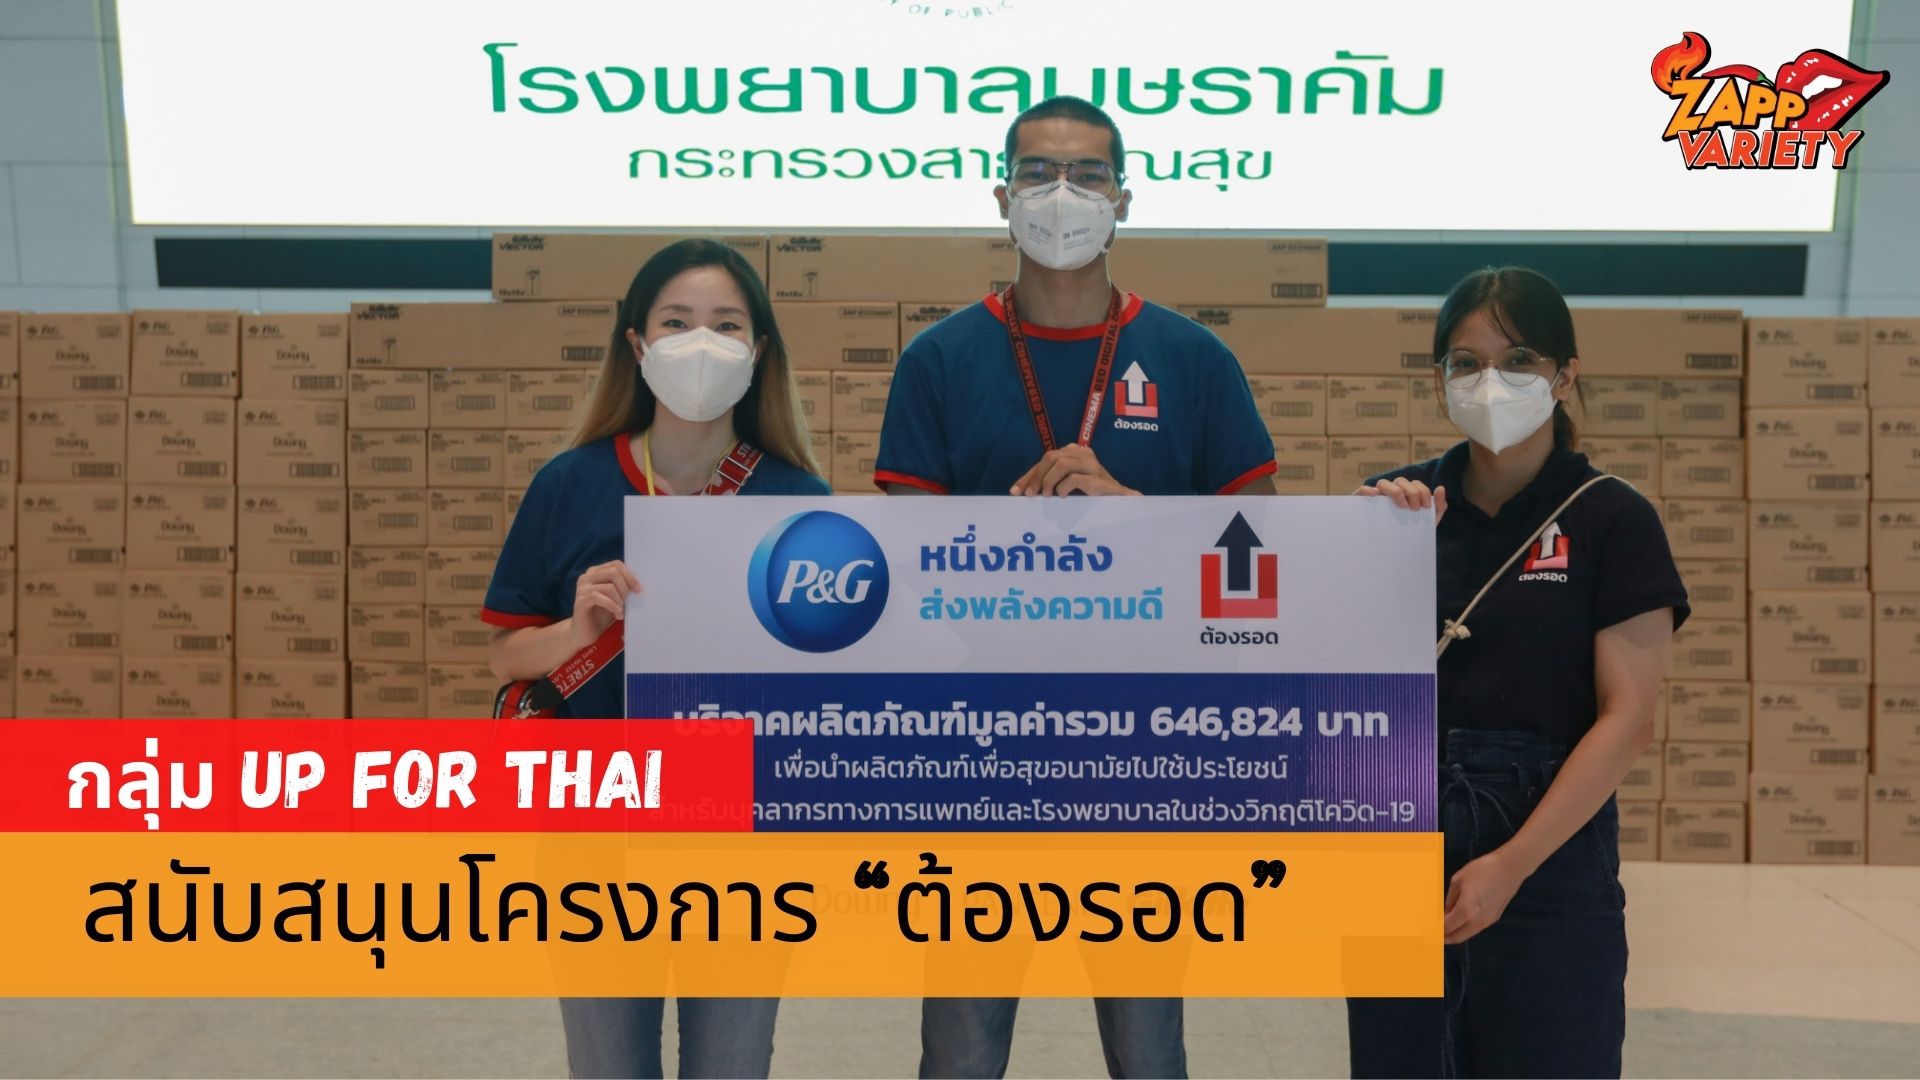 P&G ประเทศไทยสนับสนุนโครงการ “ต้องรอด” โดยกลุ่ม Up for Thai ในโครงการเฉพาะกิจ #missionบุษราคัม75 ด้วยการร่วมบริจาคผลิตภัณฑ์เพื่อสุขอนามัย